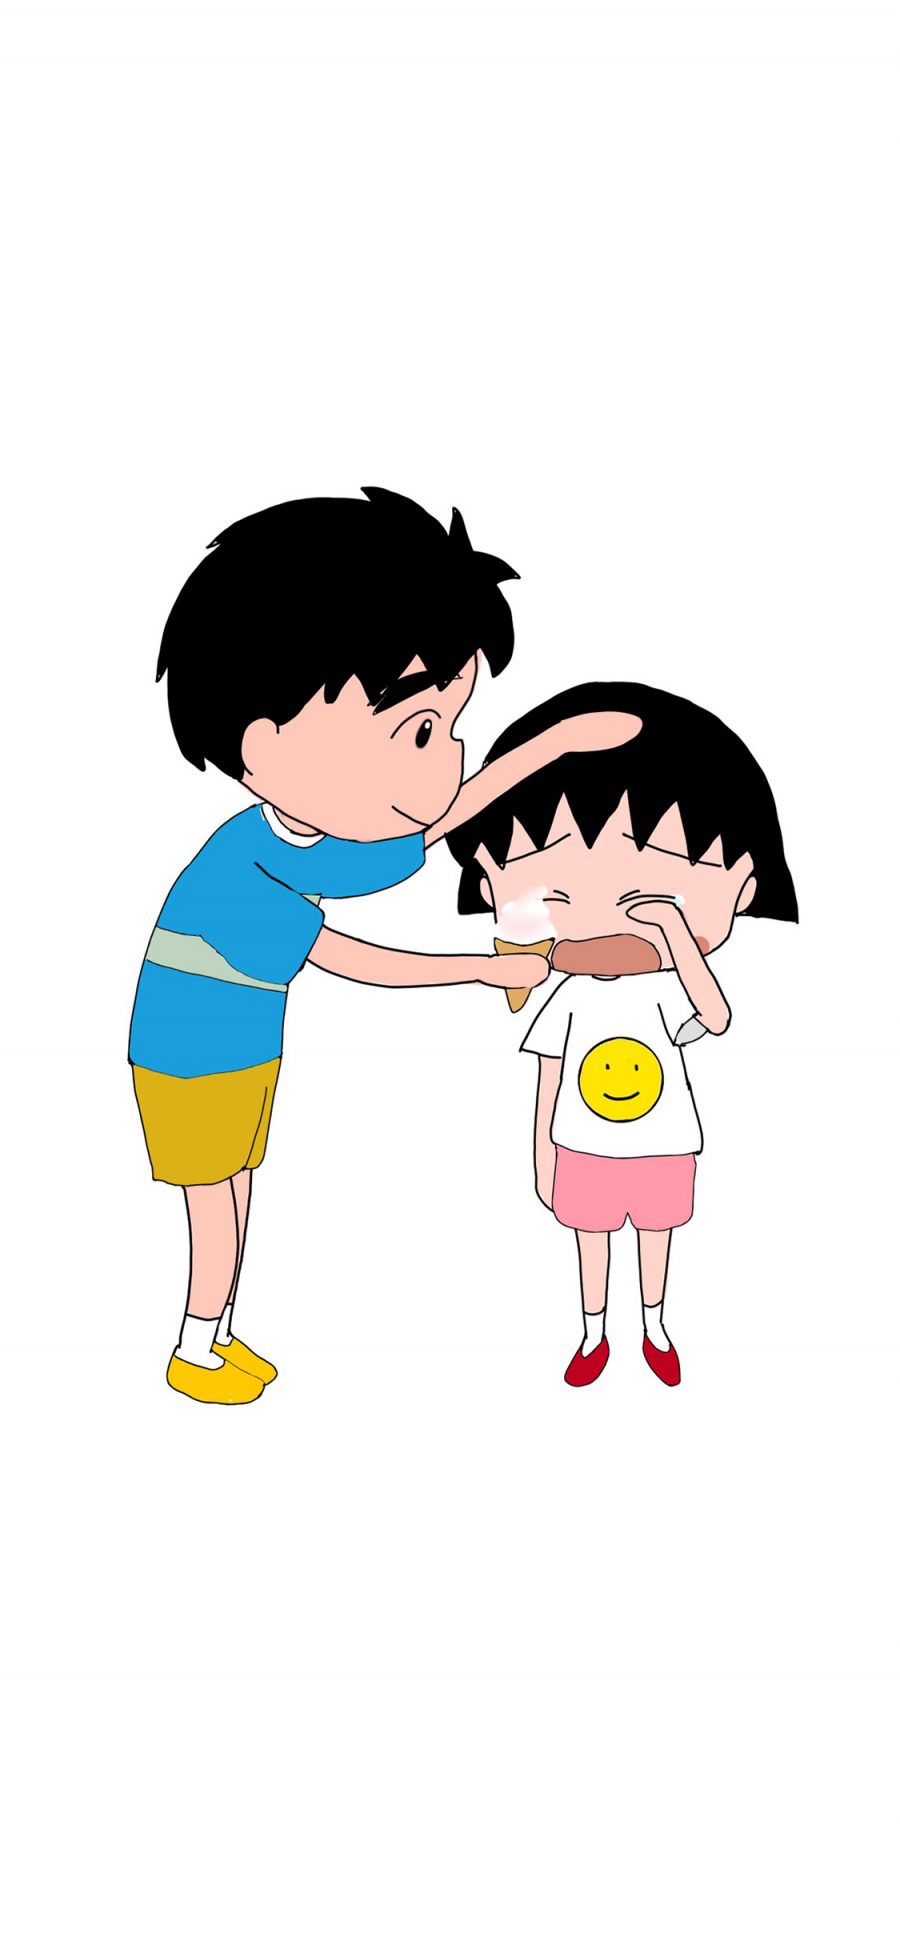 [2436×1125]樱桃小丸子 大野健一 日本 漫画 卡通 哭泣 安慰 苹果手机动漫壁纸图片